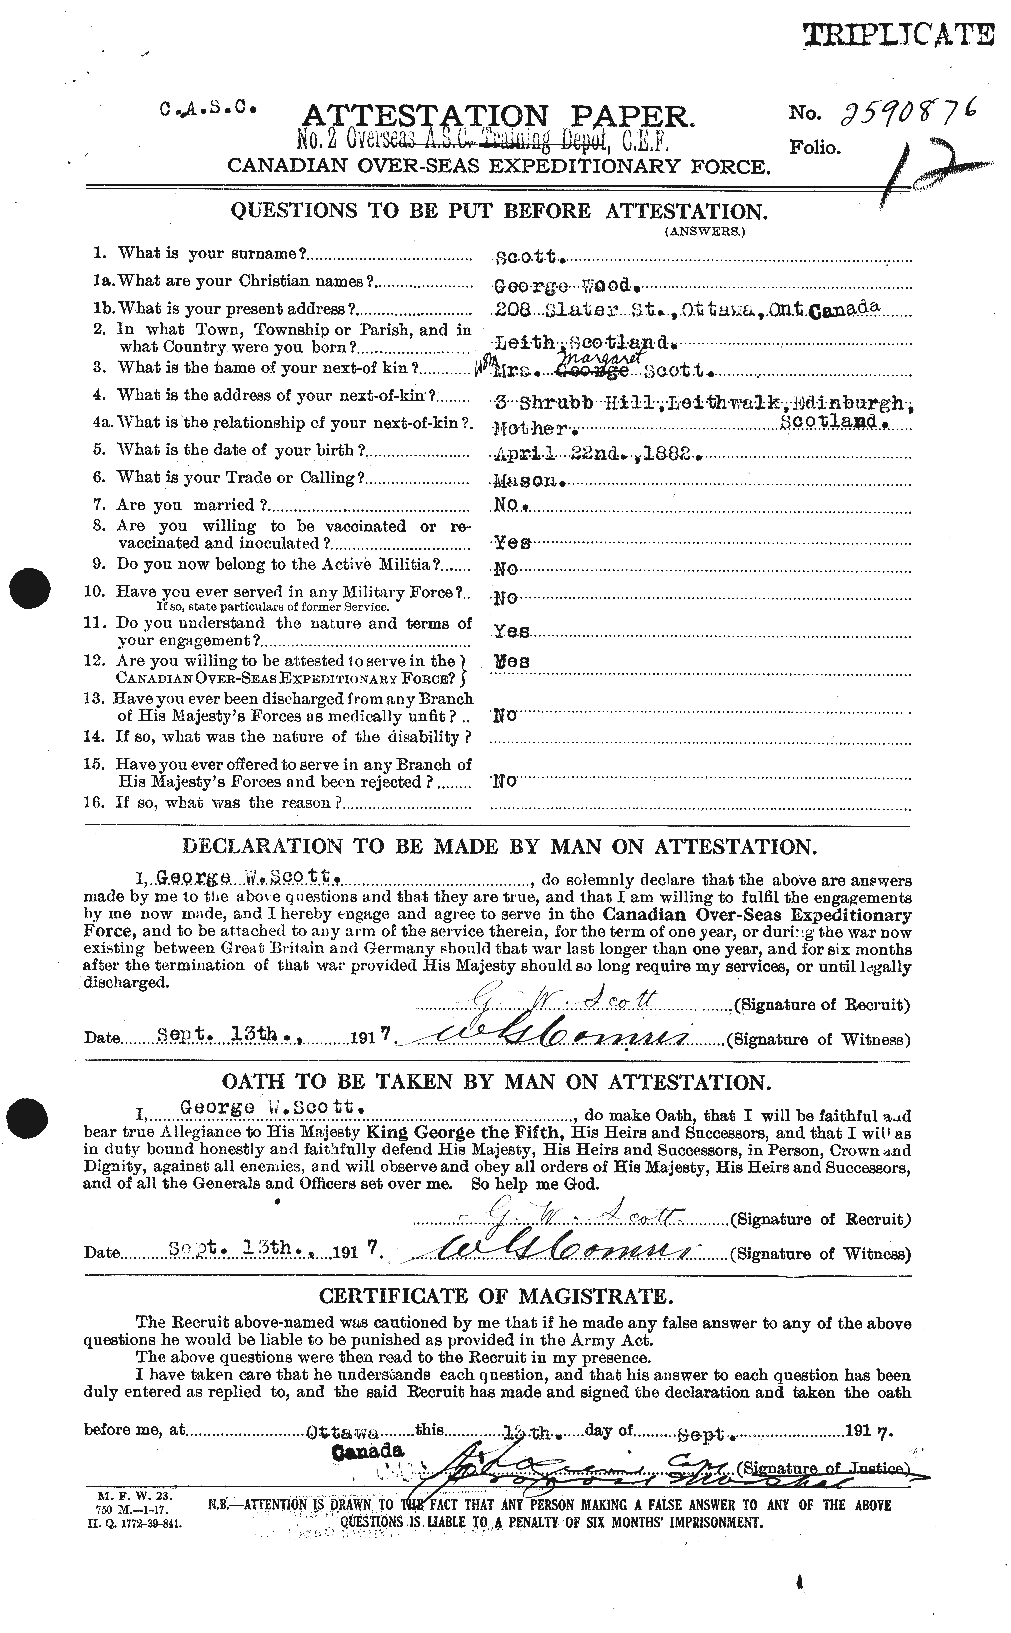 Dossiers du Personnel de la Première Guerre mondiale - CEC 083127a